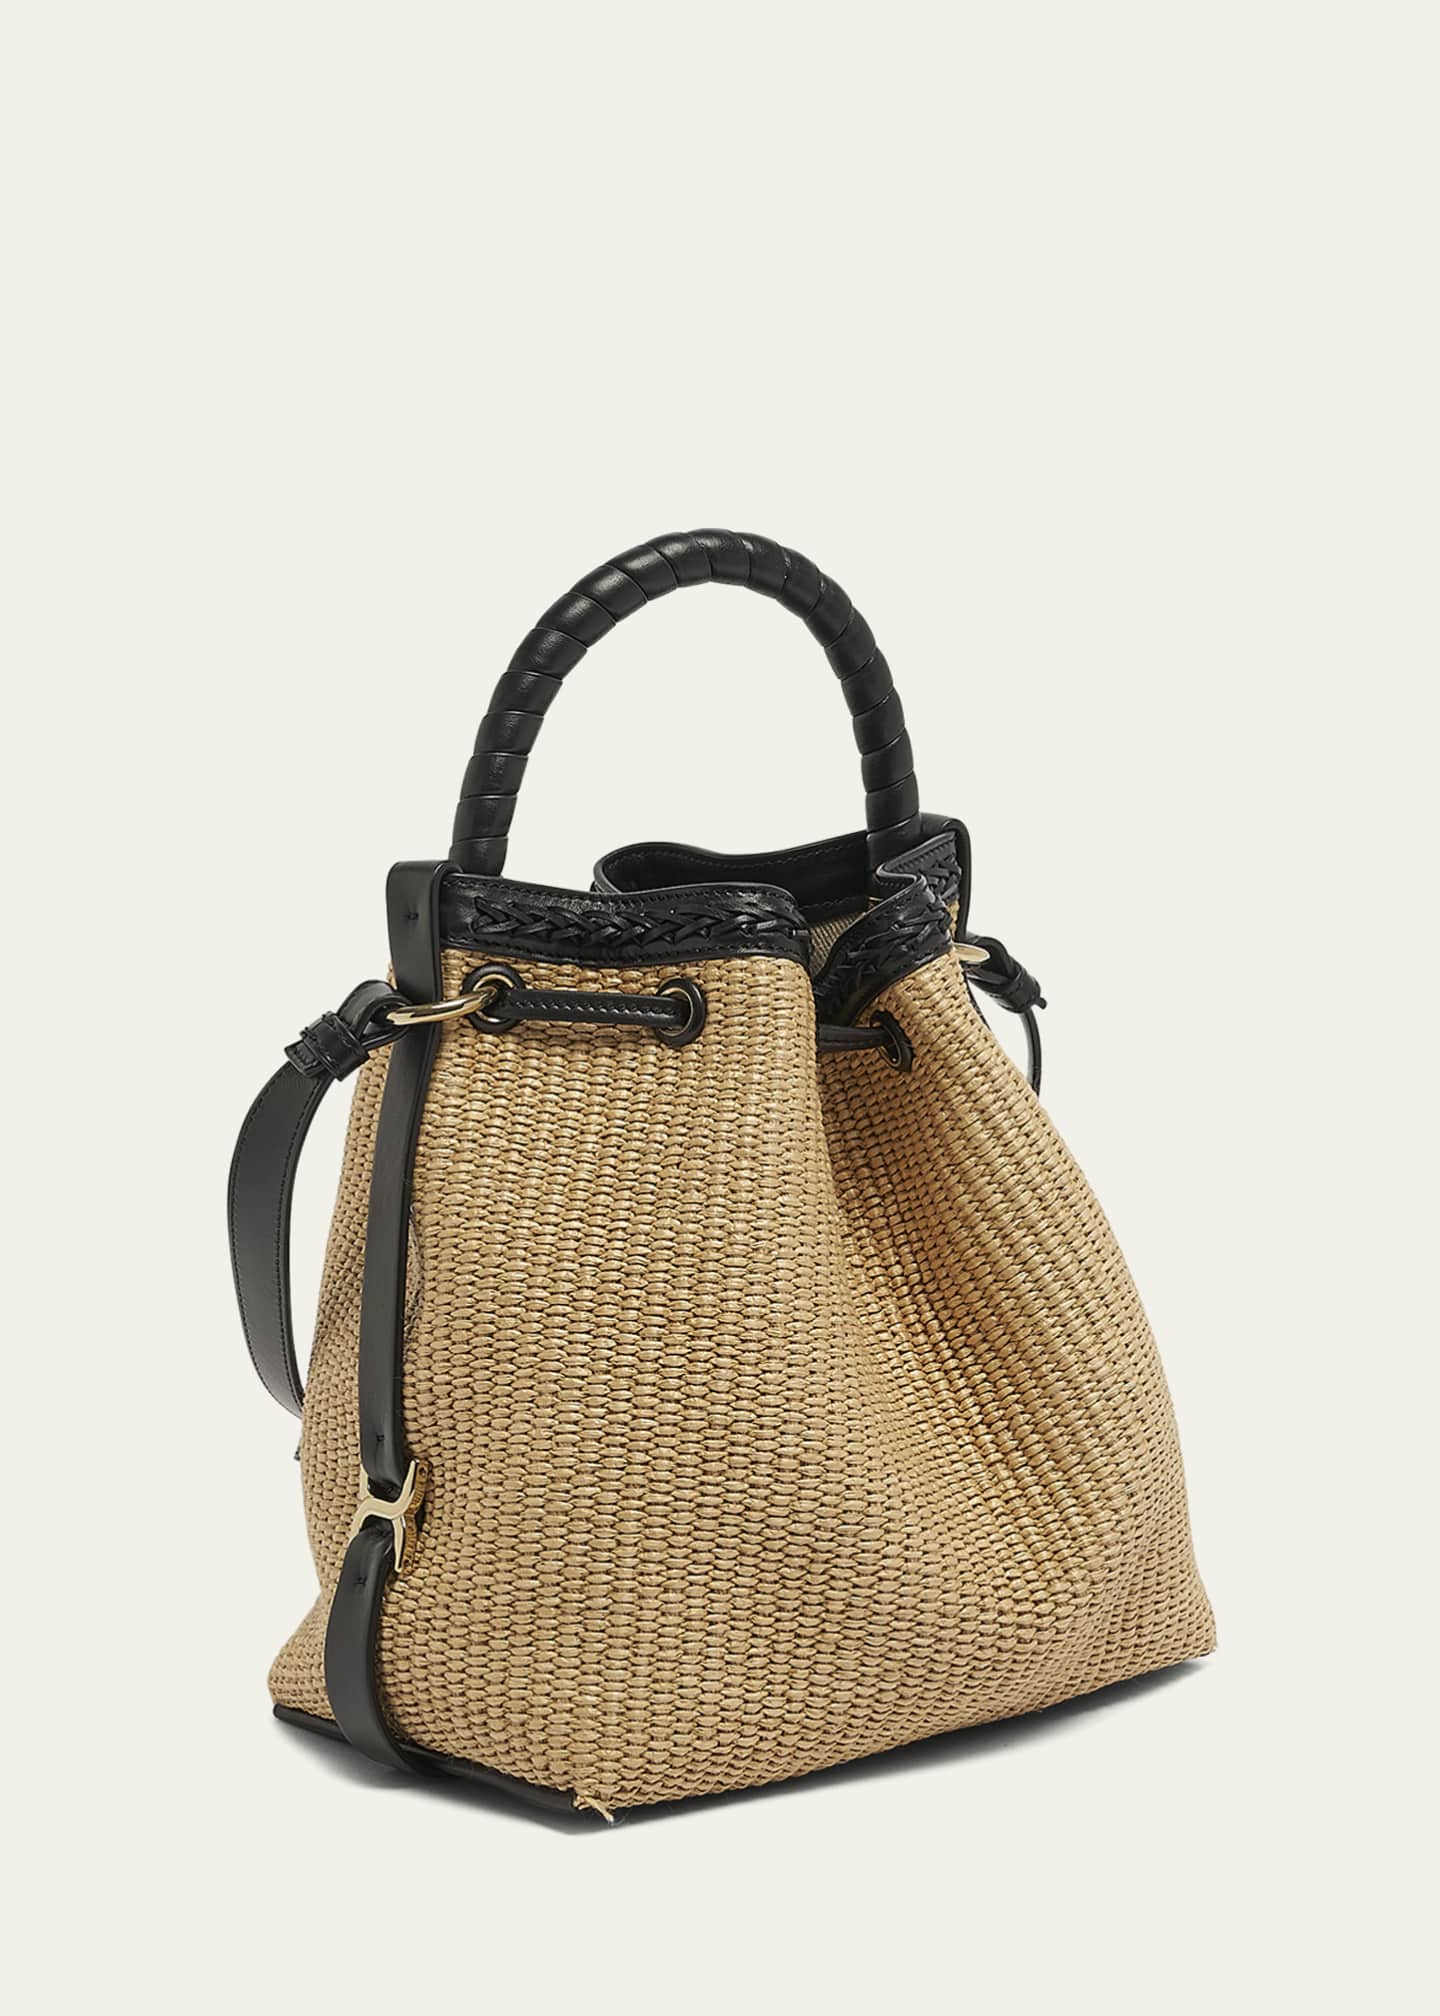 Chloe Marcie Drawstring Bucket Bag in Raffia and Leather - Bergdorf Goodman